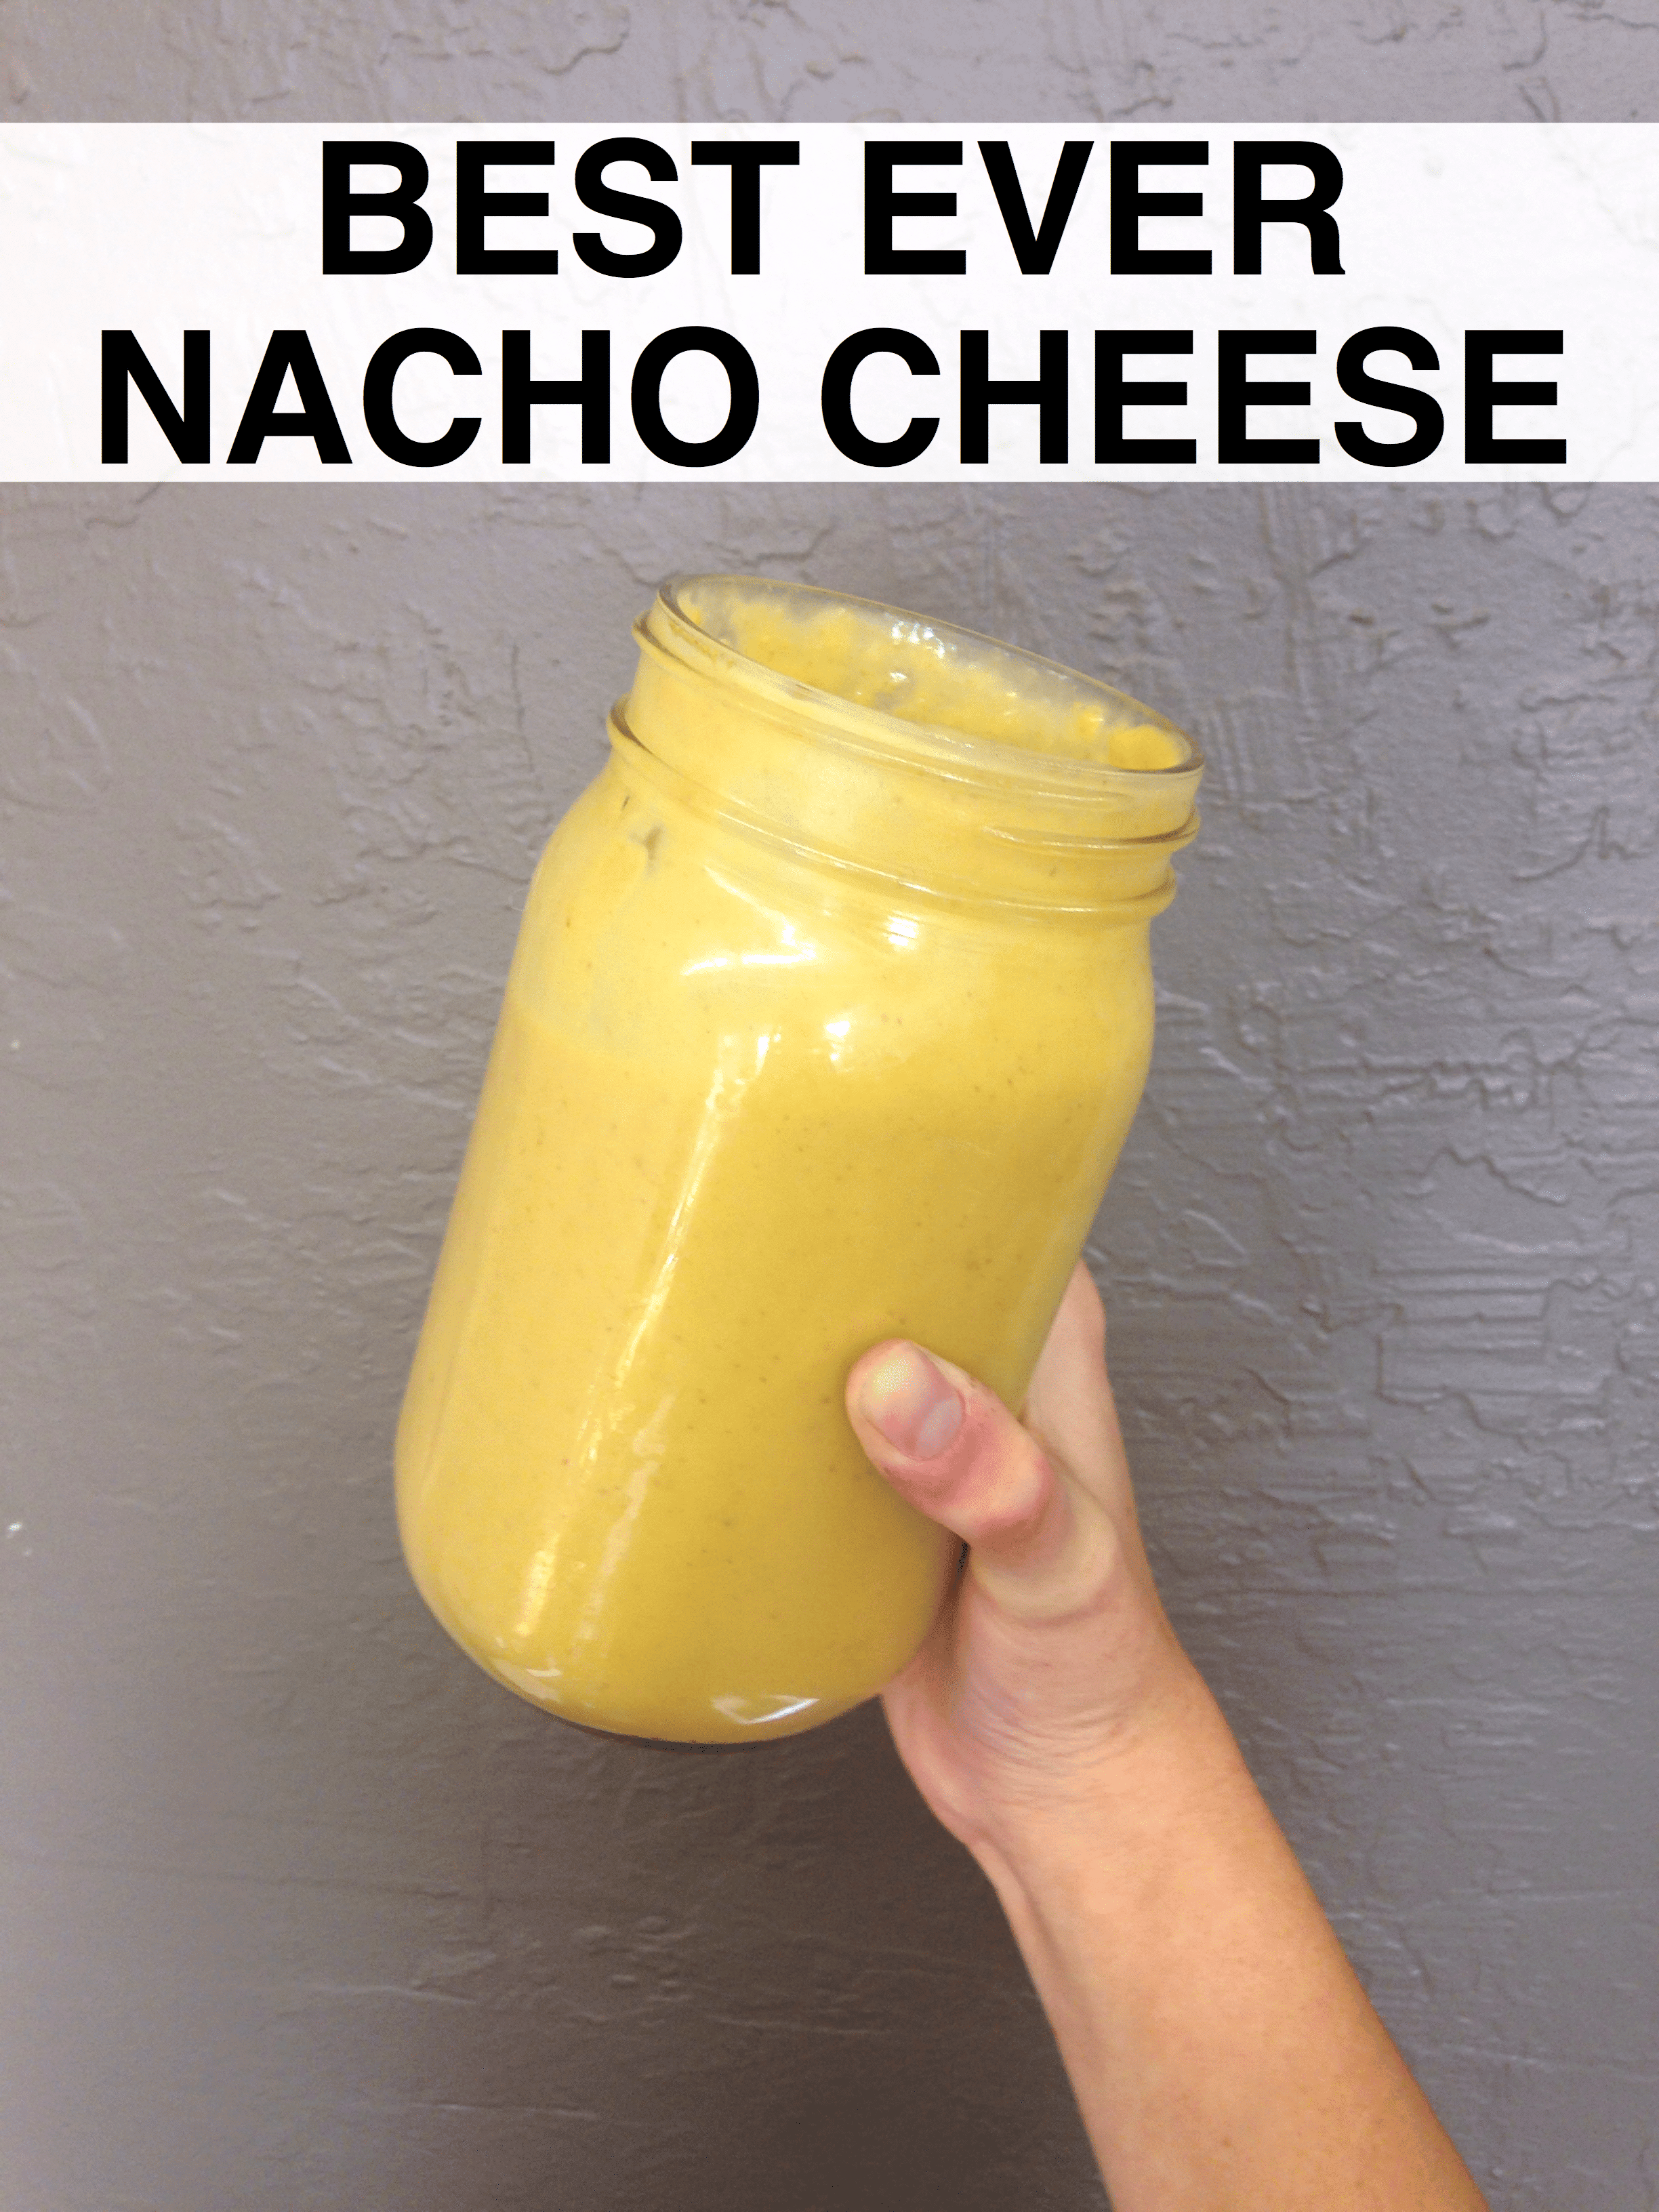 Best Ever Nacho Cheese!